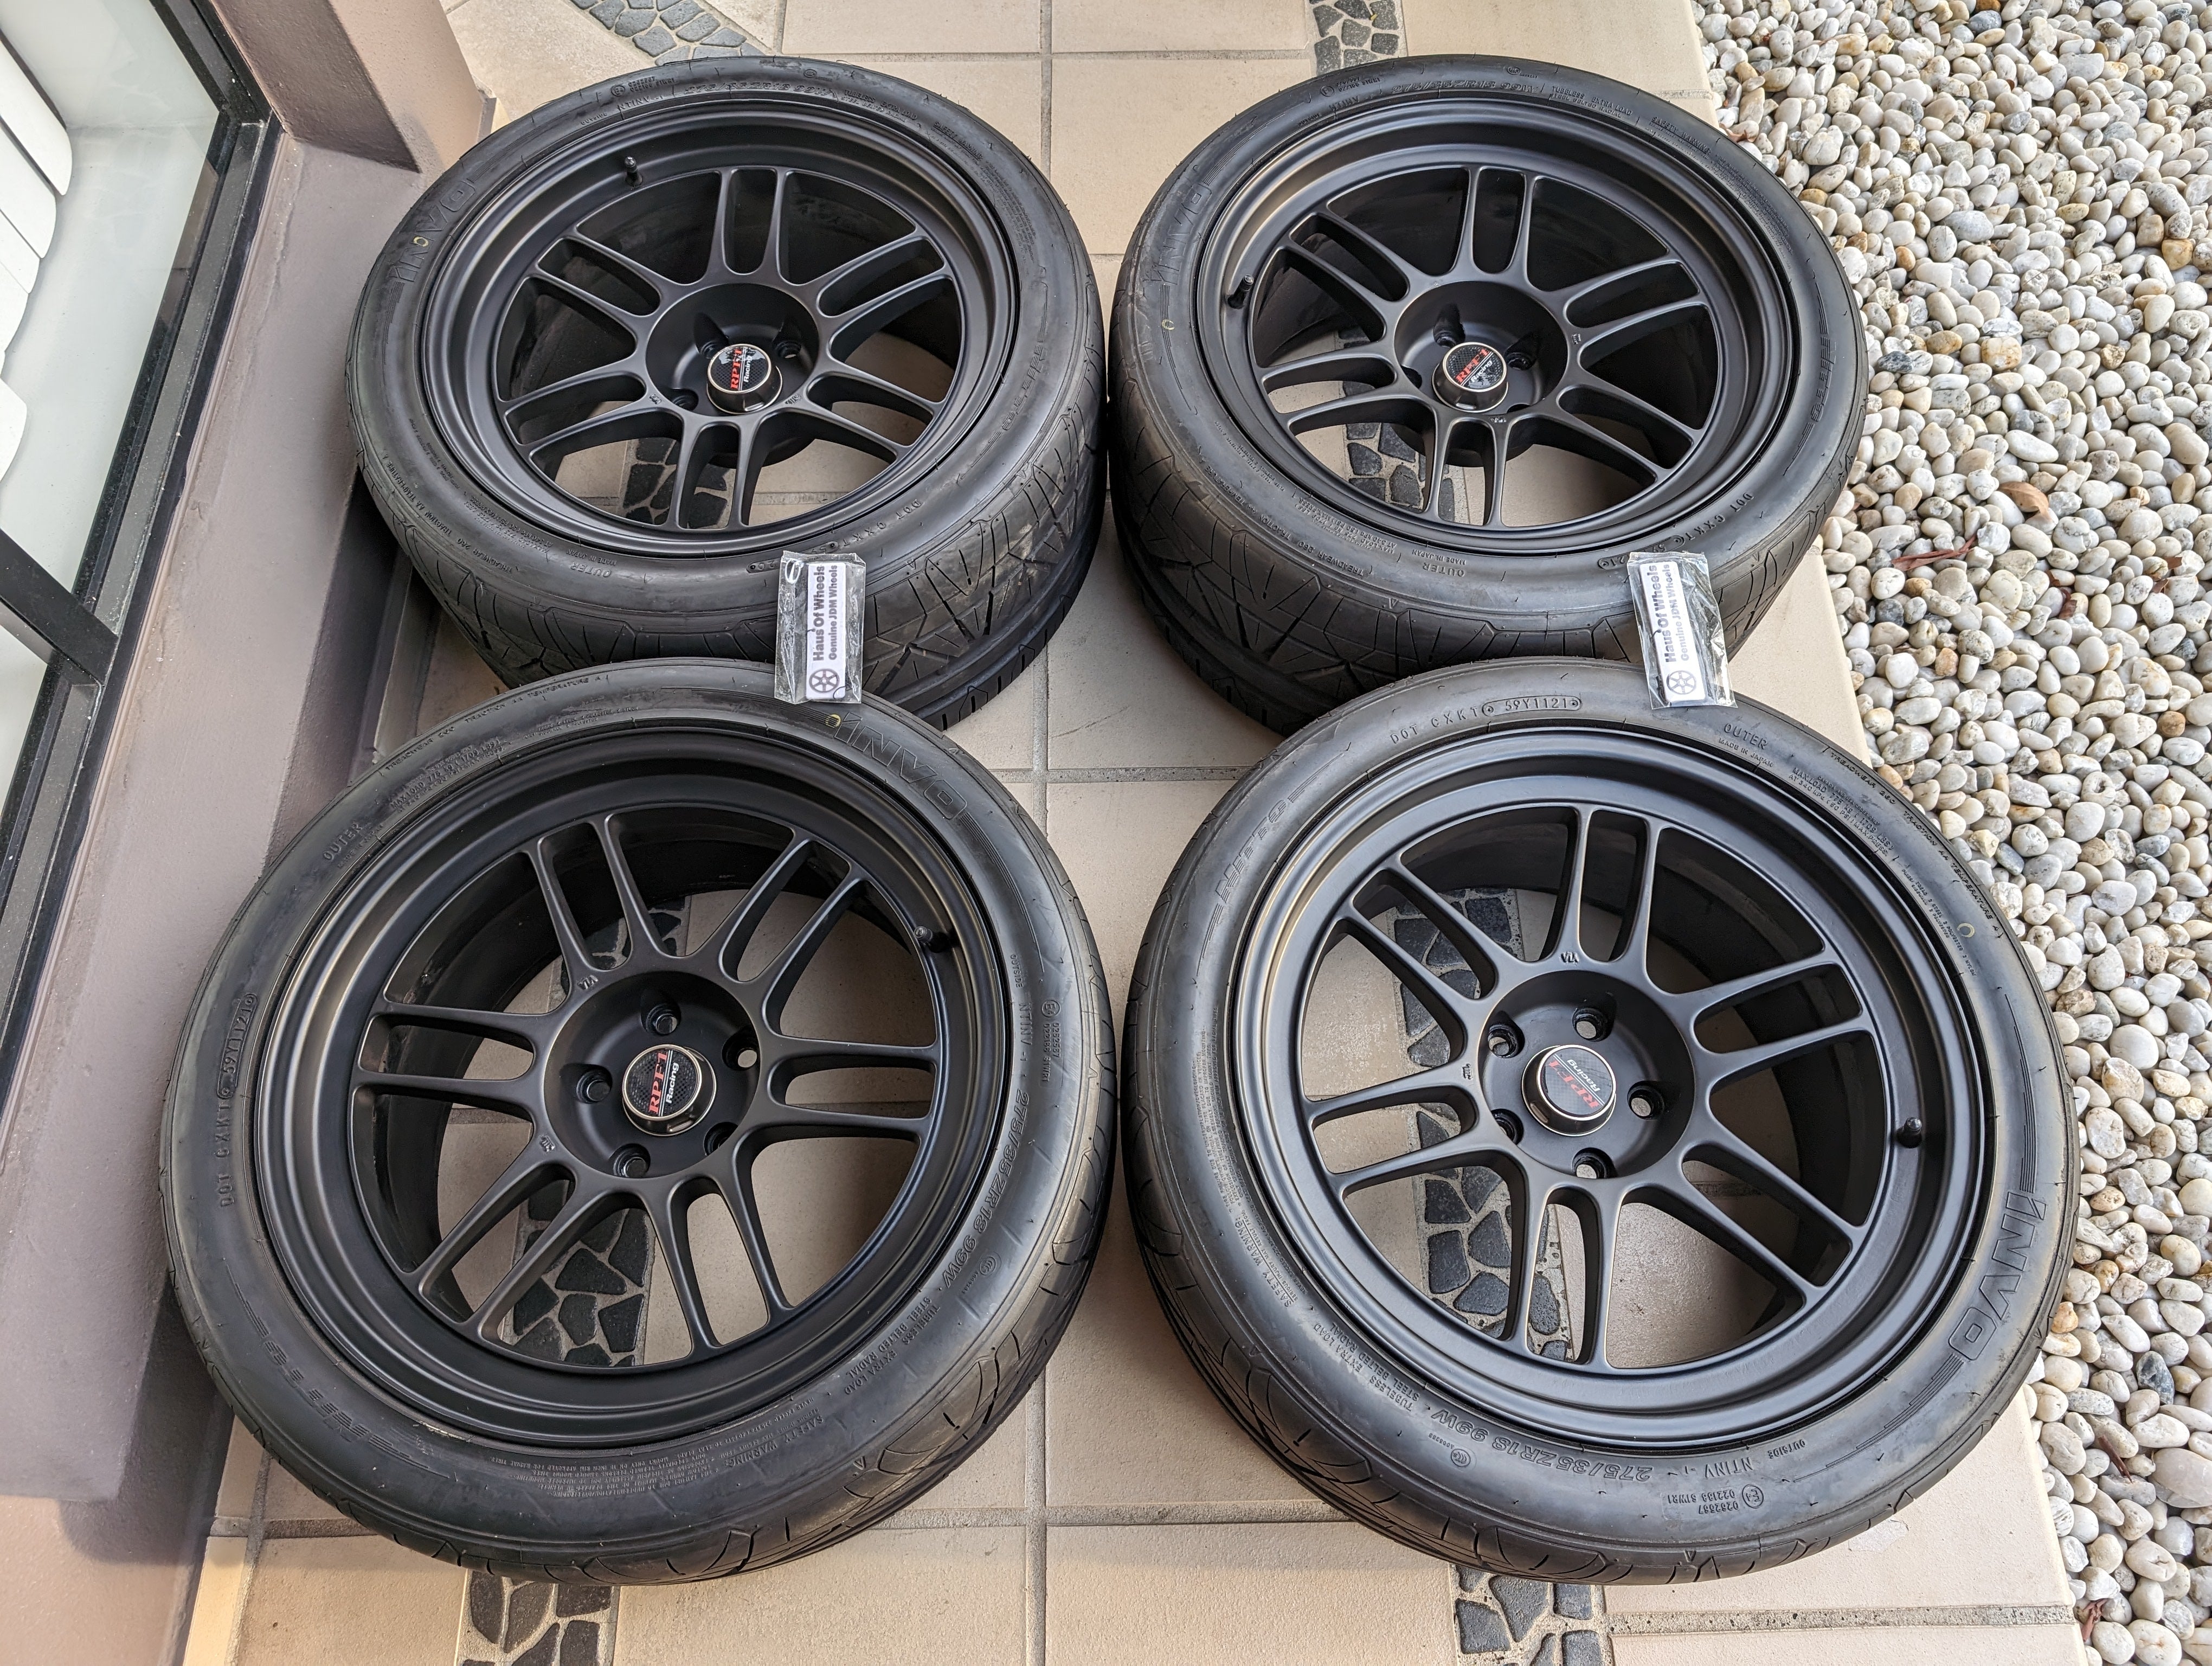 *Near New* Enkei RPF1 (Matte Black) with Genuine Enkei Stickers and Brand New Nitto Tyres - $2800